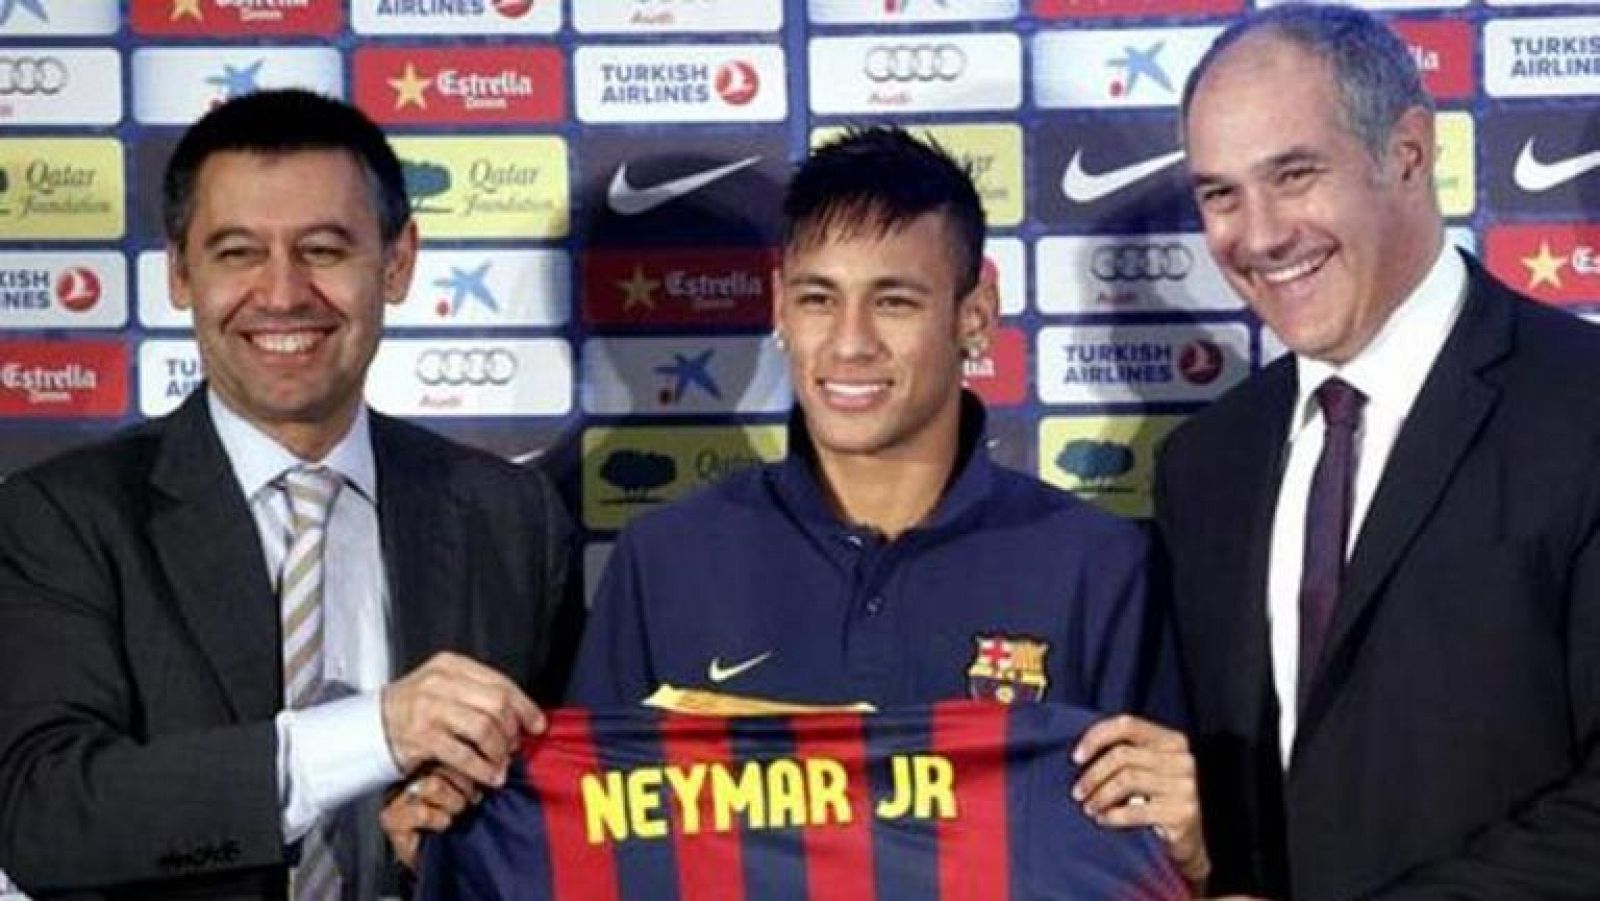 El Barcelona ha negado este martes que haya contactado con la Fiscalía de la Audiencia Nacional para llegar a un acuerdo de conformidad en el delito fiscal que se le imputa en el caso Neymar, según ha hecho público en un comunicado oficial.